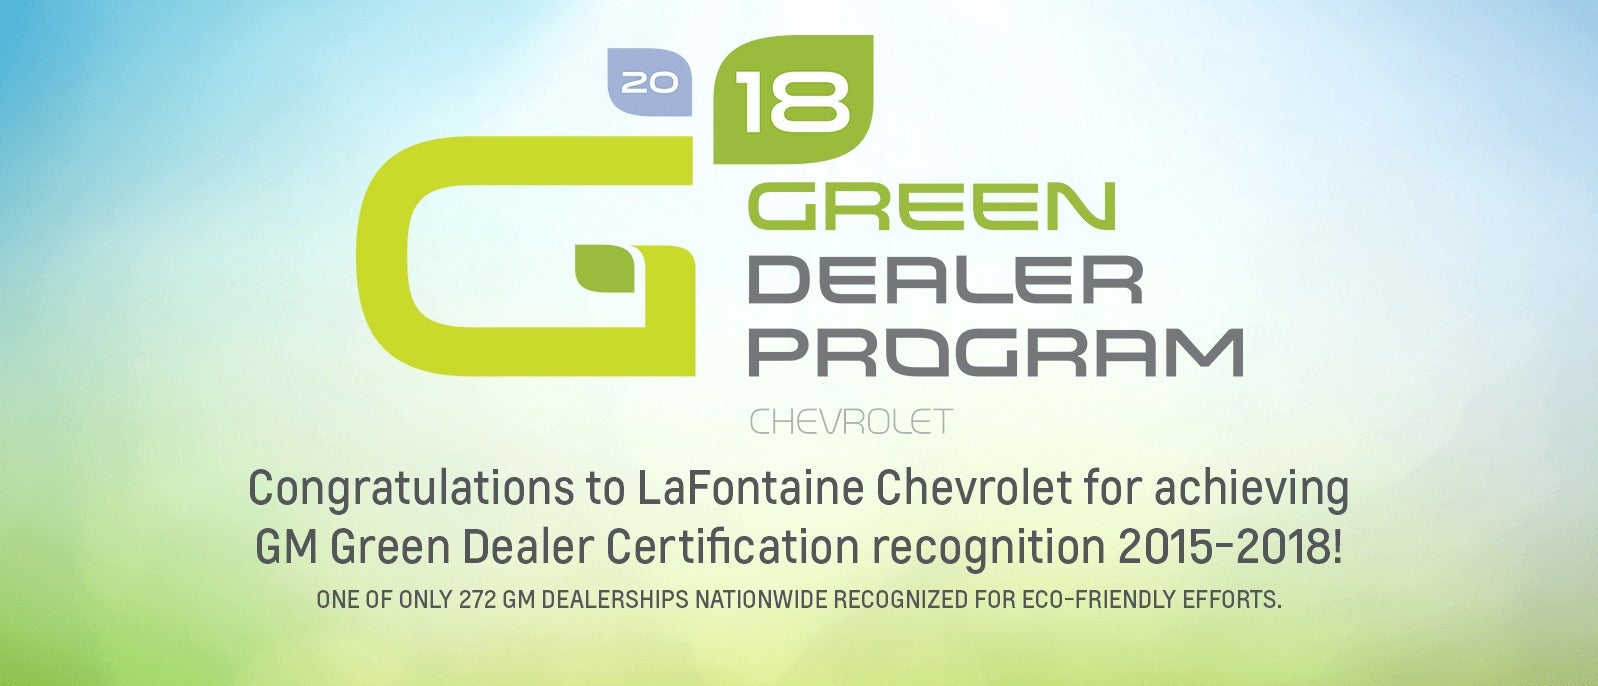 Green Dealer Program banner